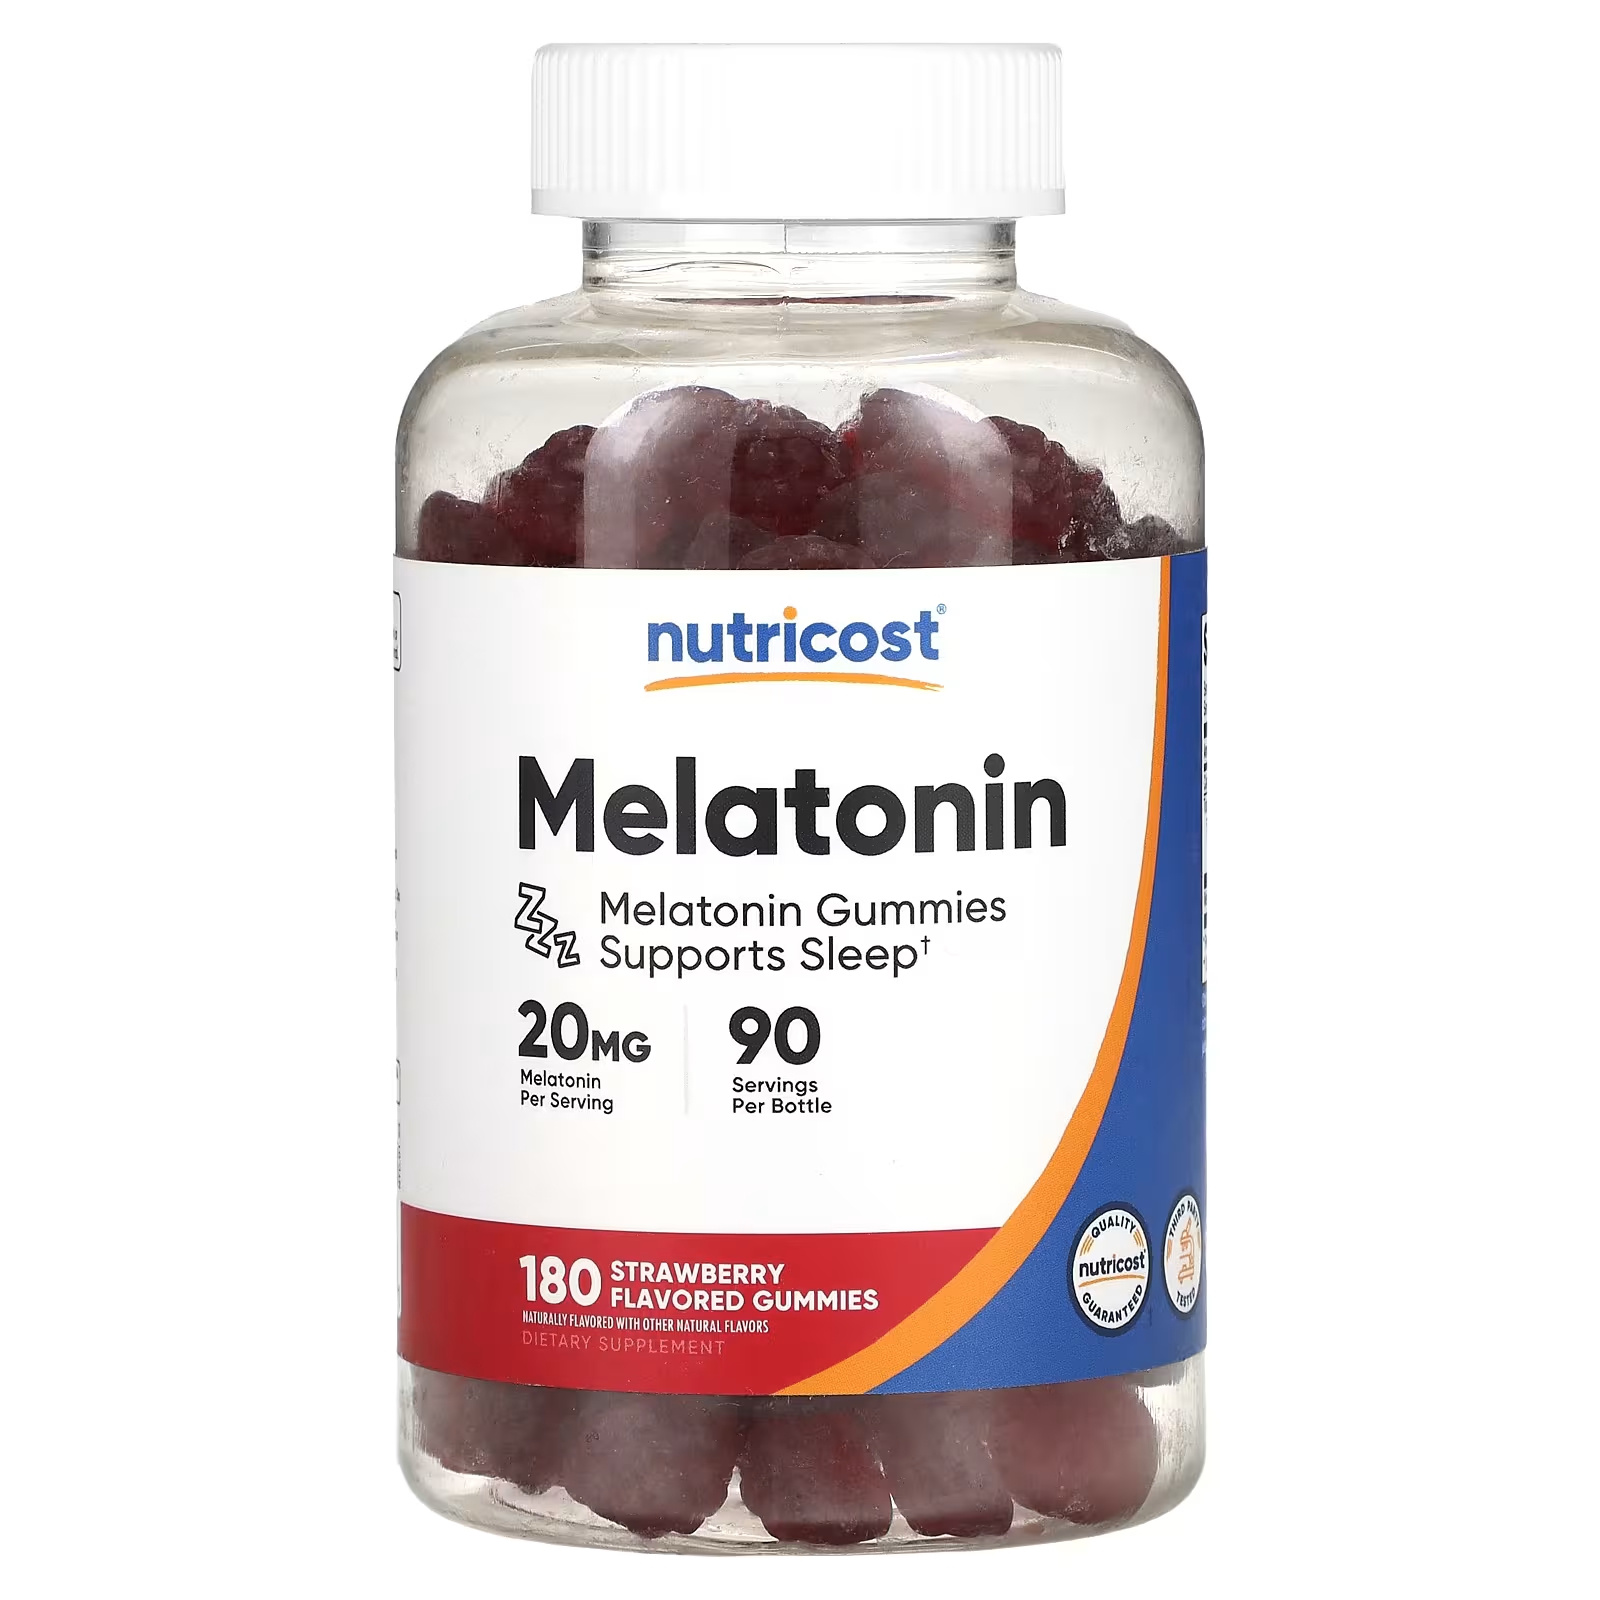 Мелатониновая пищевая добавка Nutricost с клубникой, 180 жевательных конфет